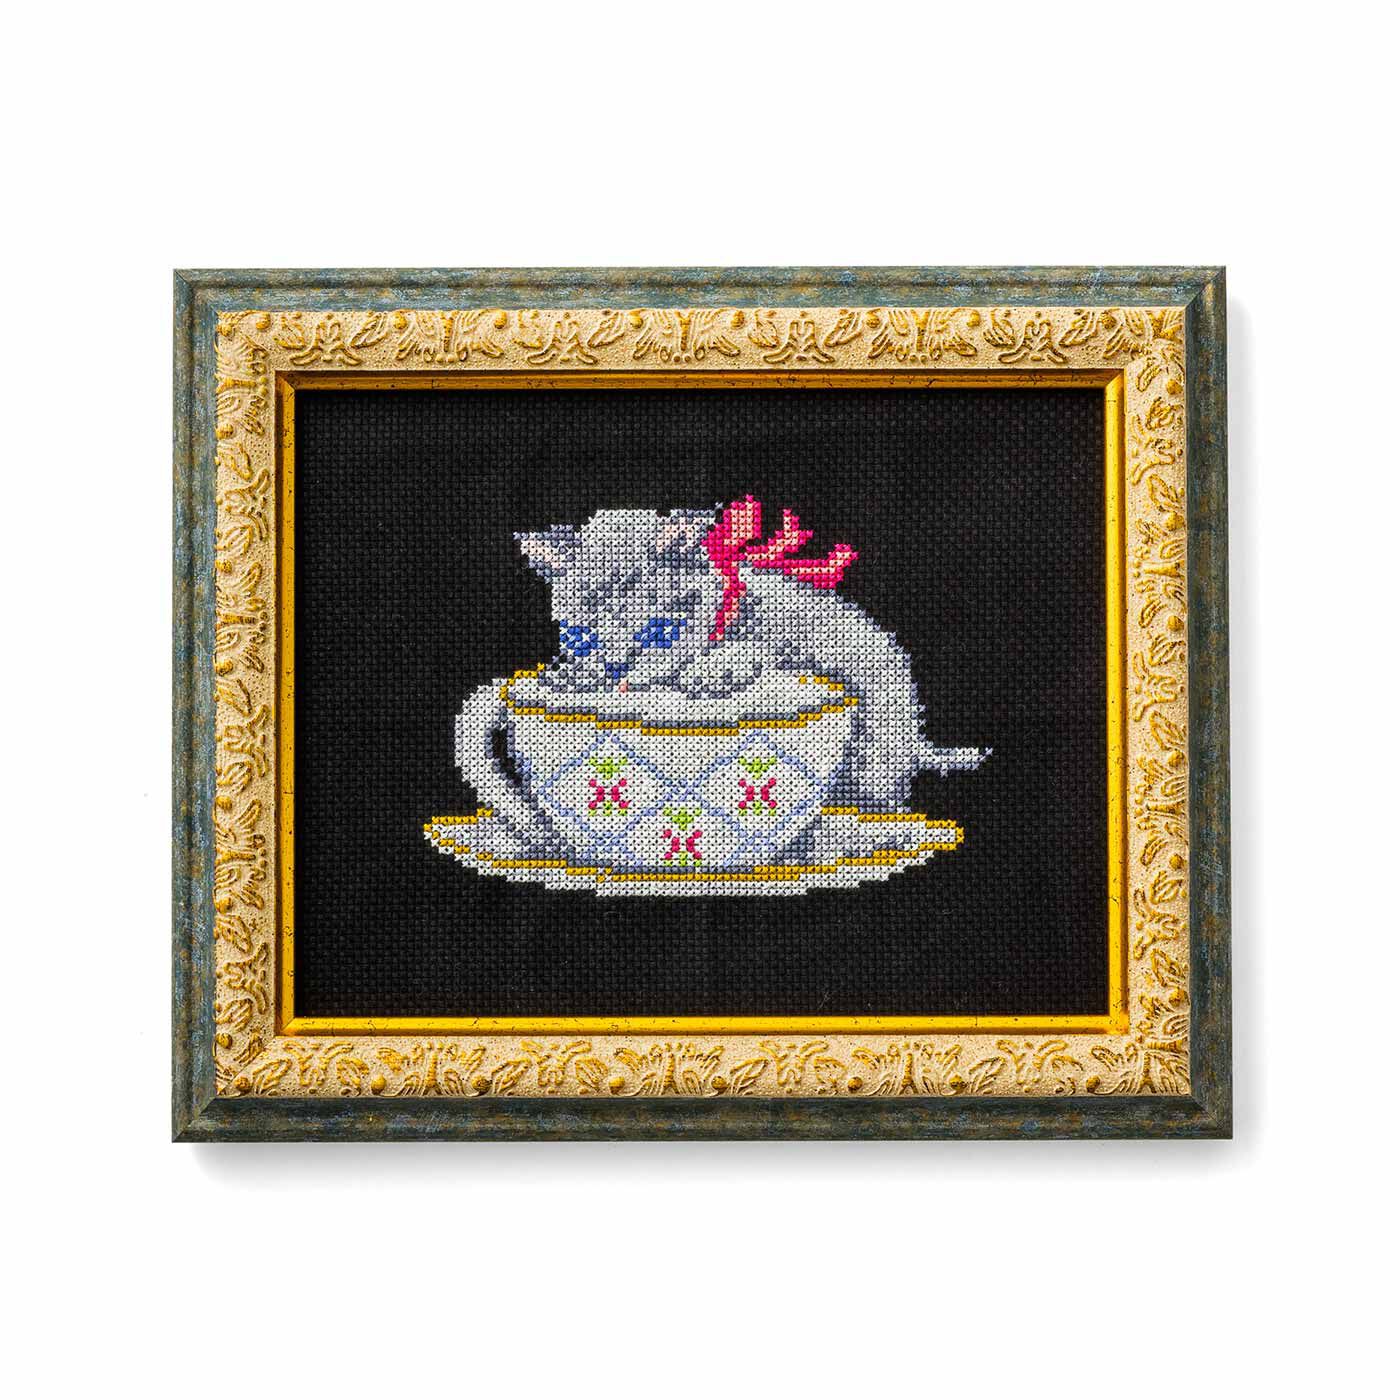 クチュリエ|ヴィクトリアンな愛らしさ 貴族のように優雅な猫のクロスステッチの会|ティーカップと戯れるルートヴィヒ